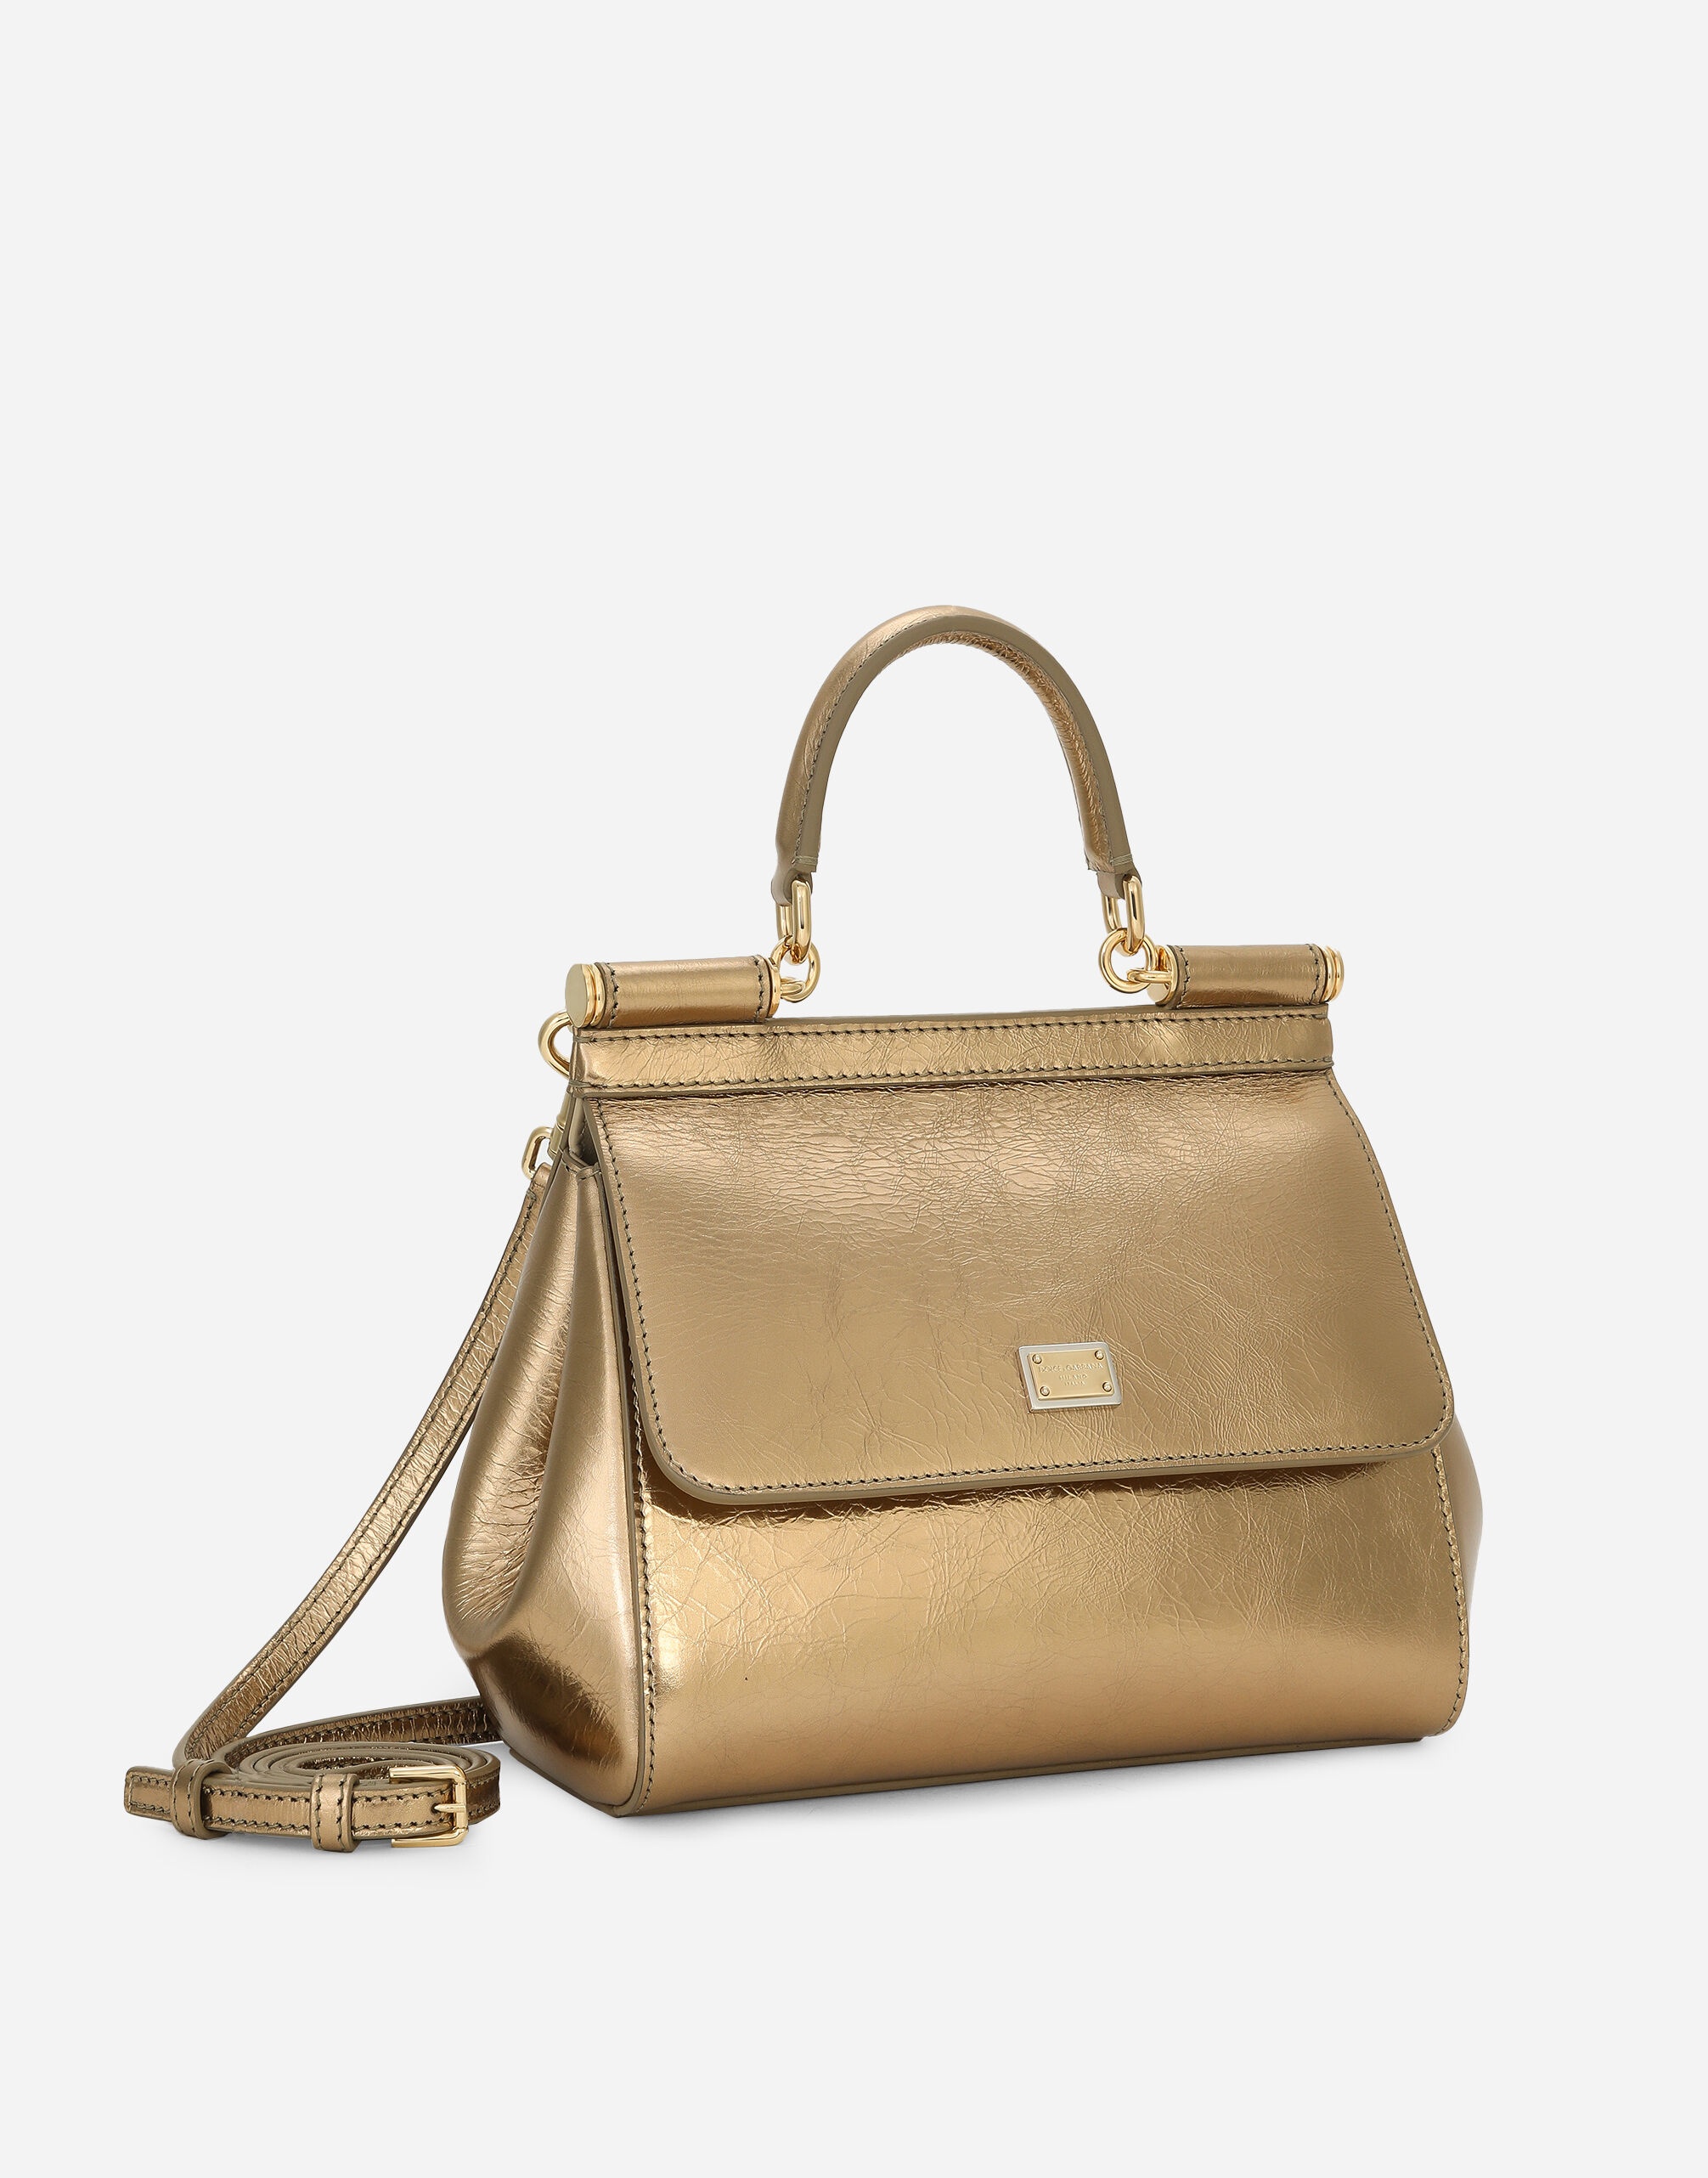 Medium Sicily handbag - 3